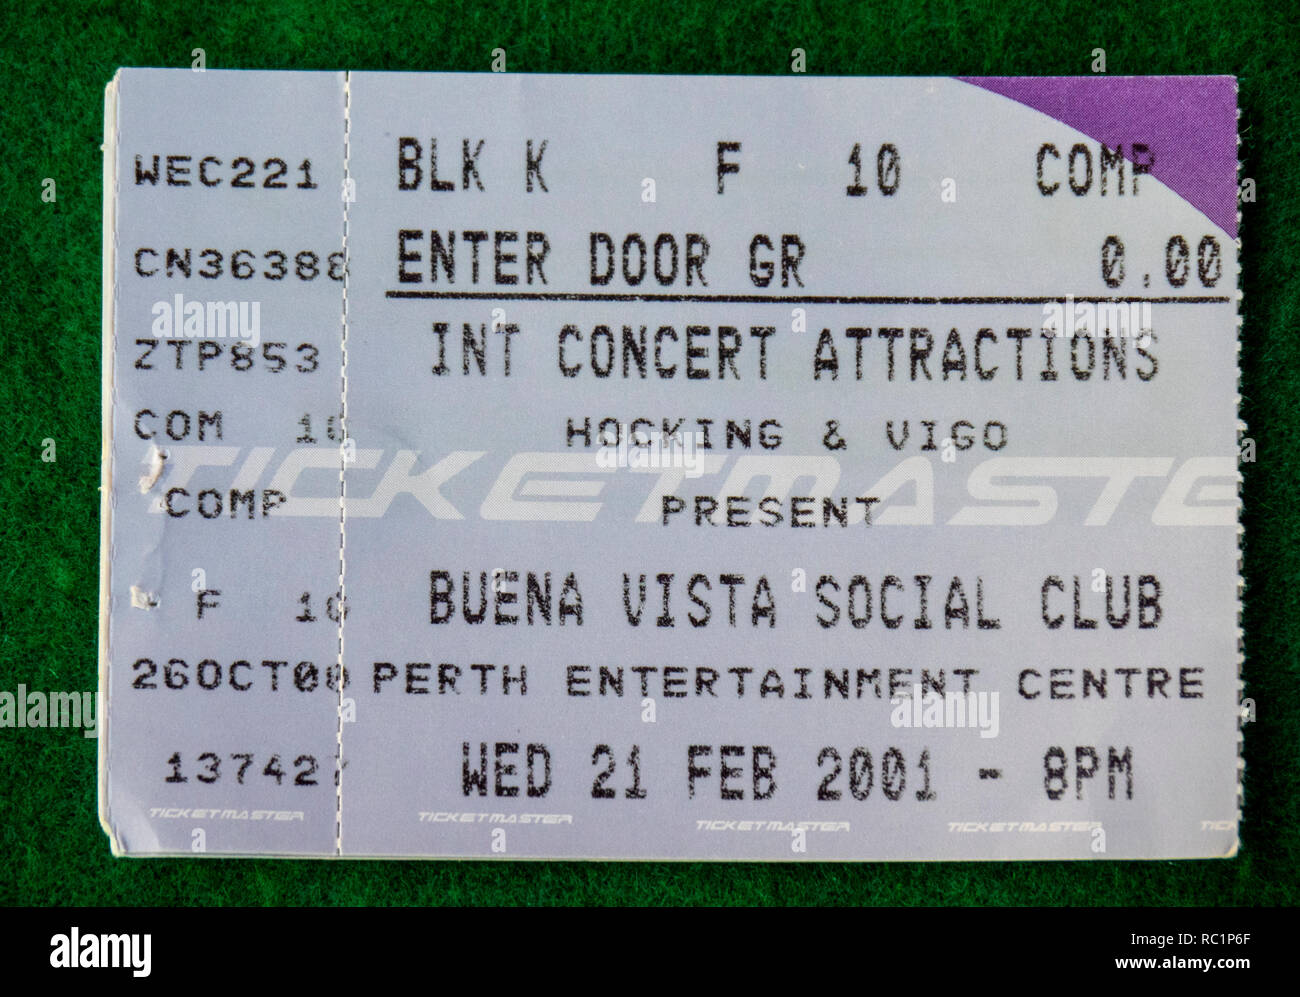 Ticket für Buena Vista Social Club Konzert in Perth Entertainment Center im Jahr 2001 WA Australien. Stockfoto